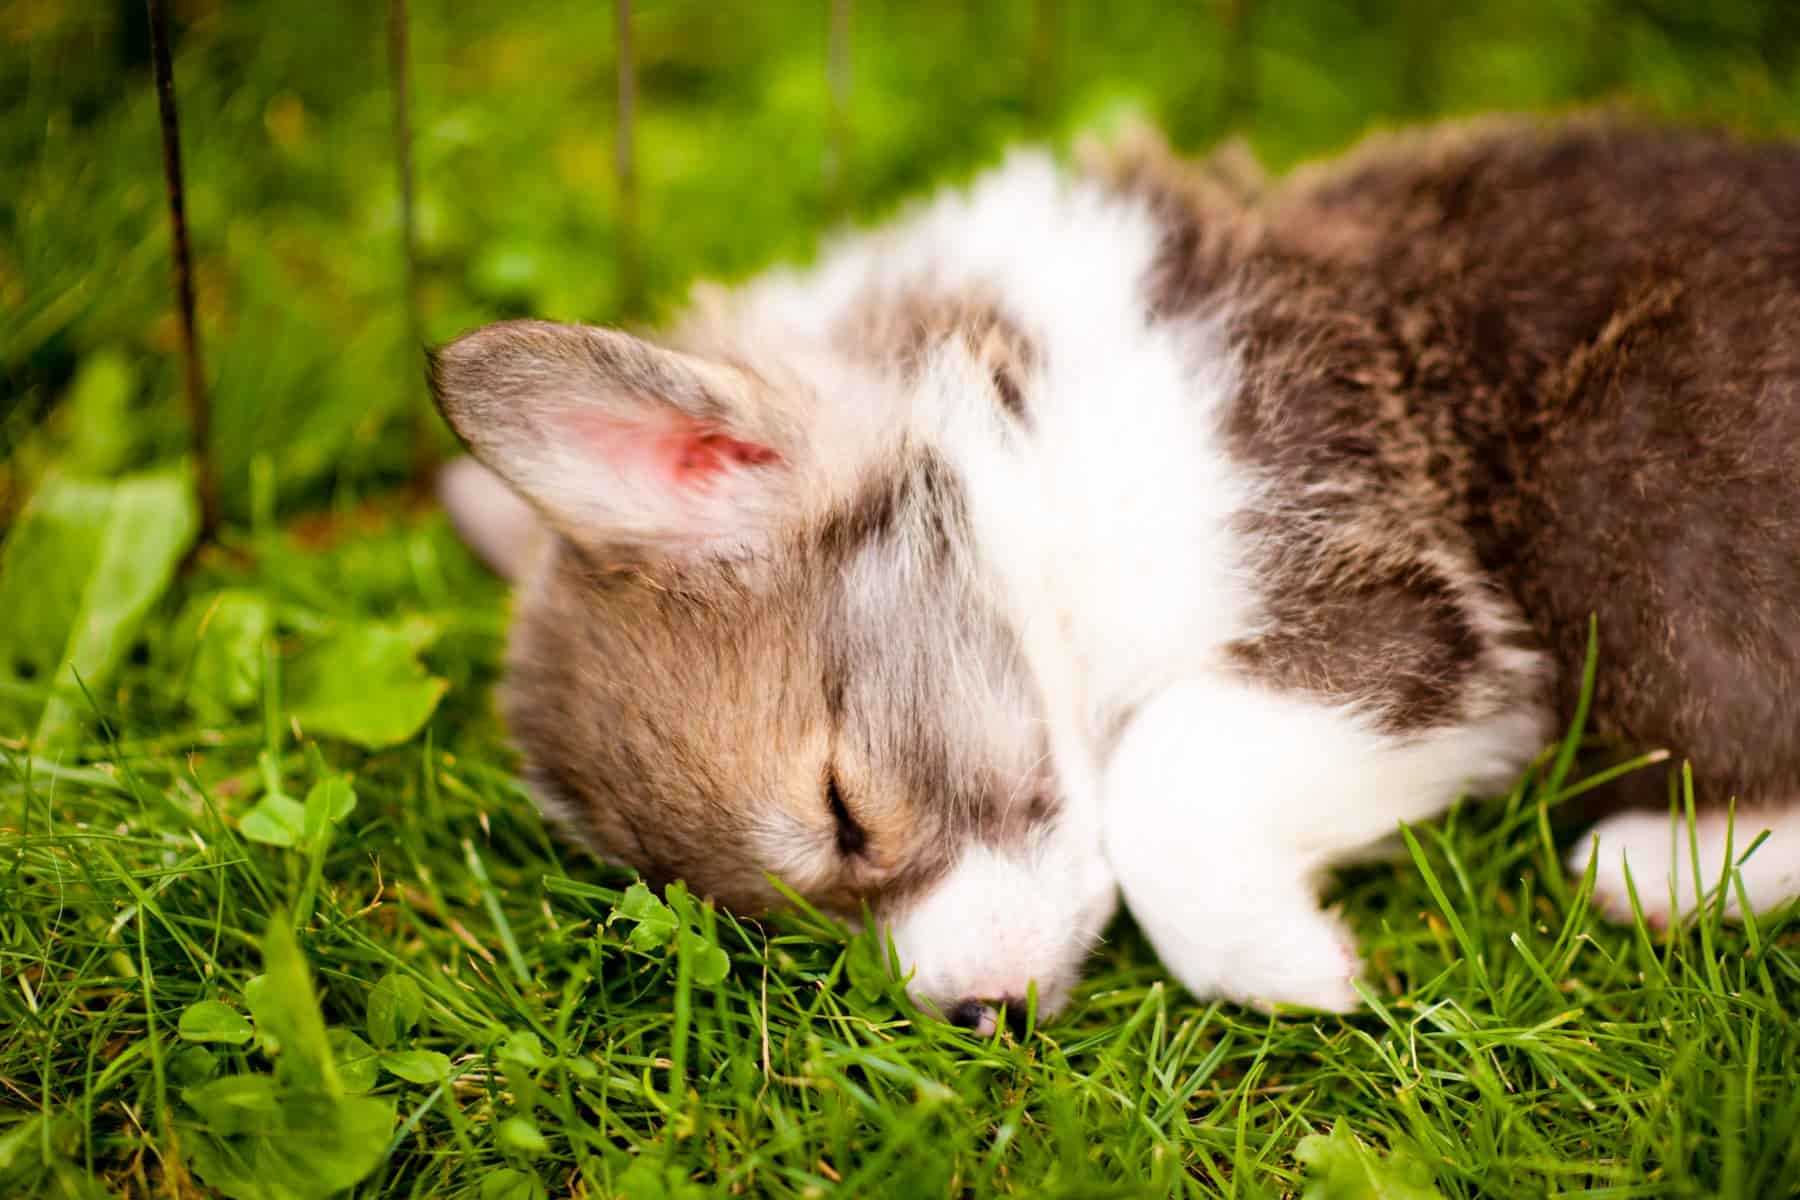 A lazy corgi sleeps in the grass